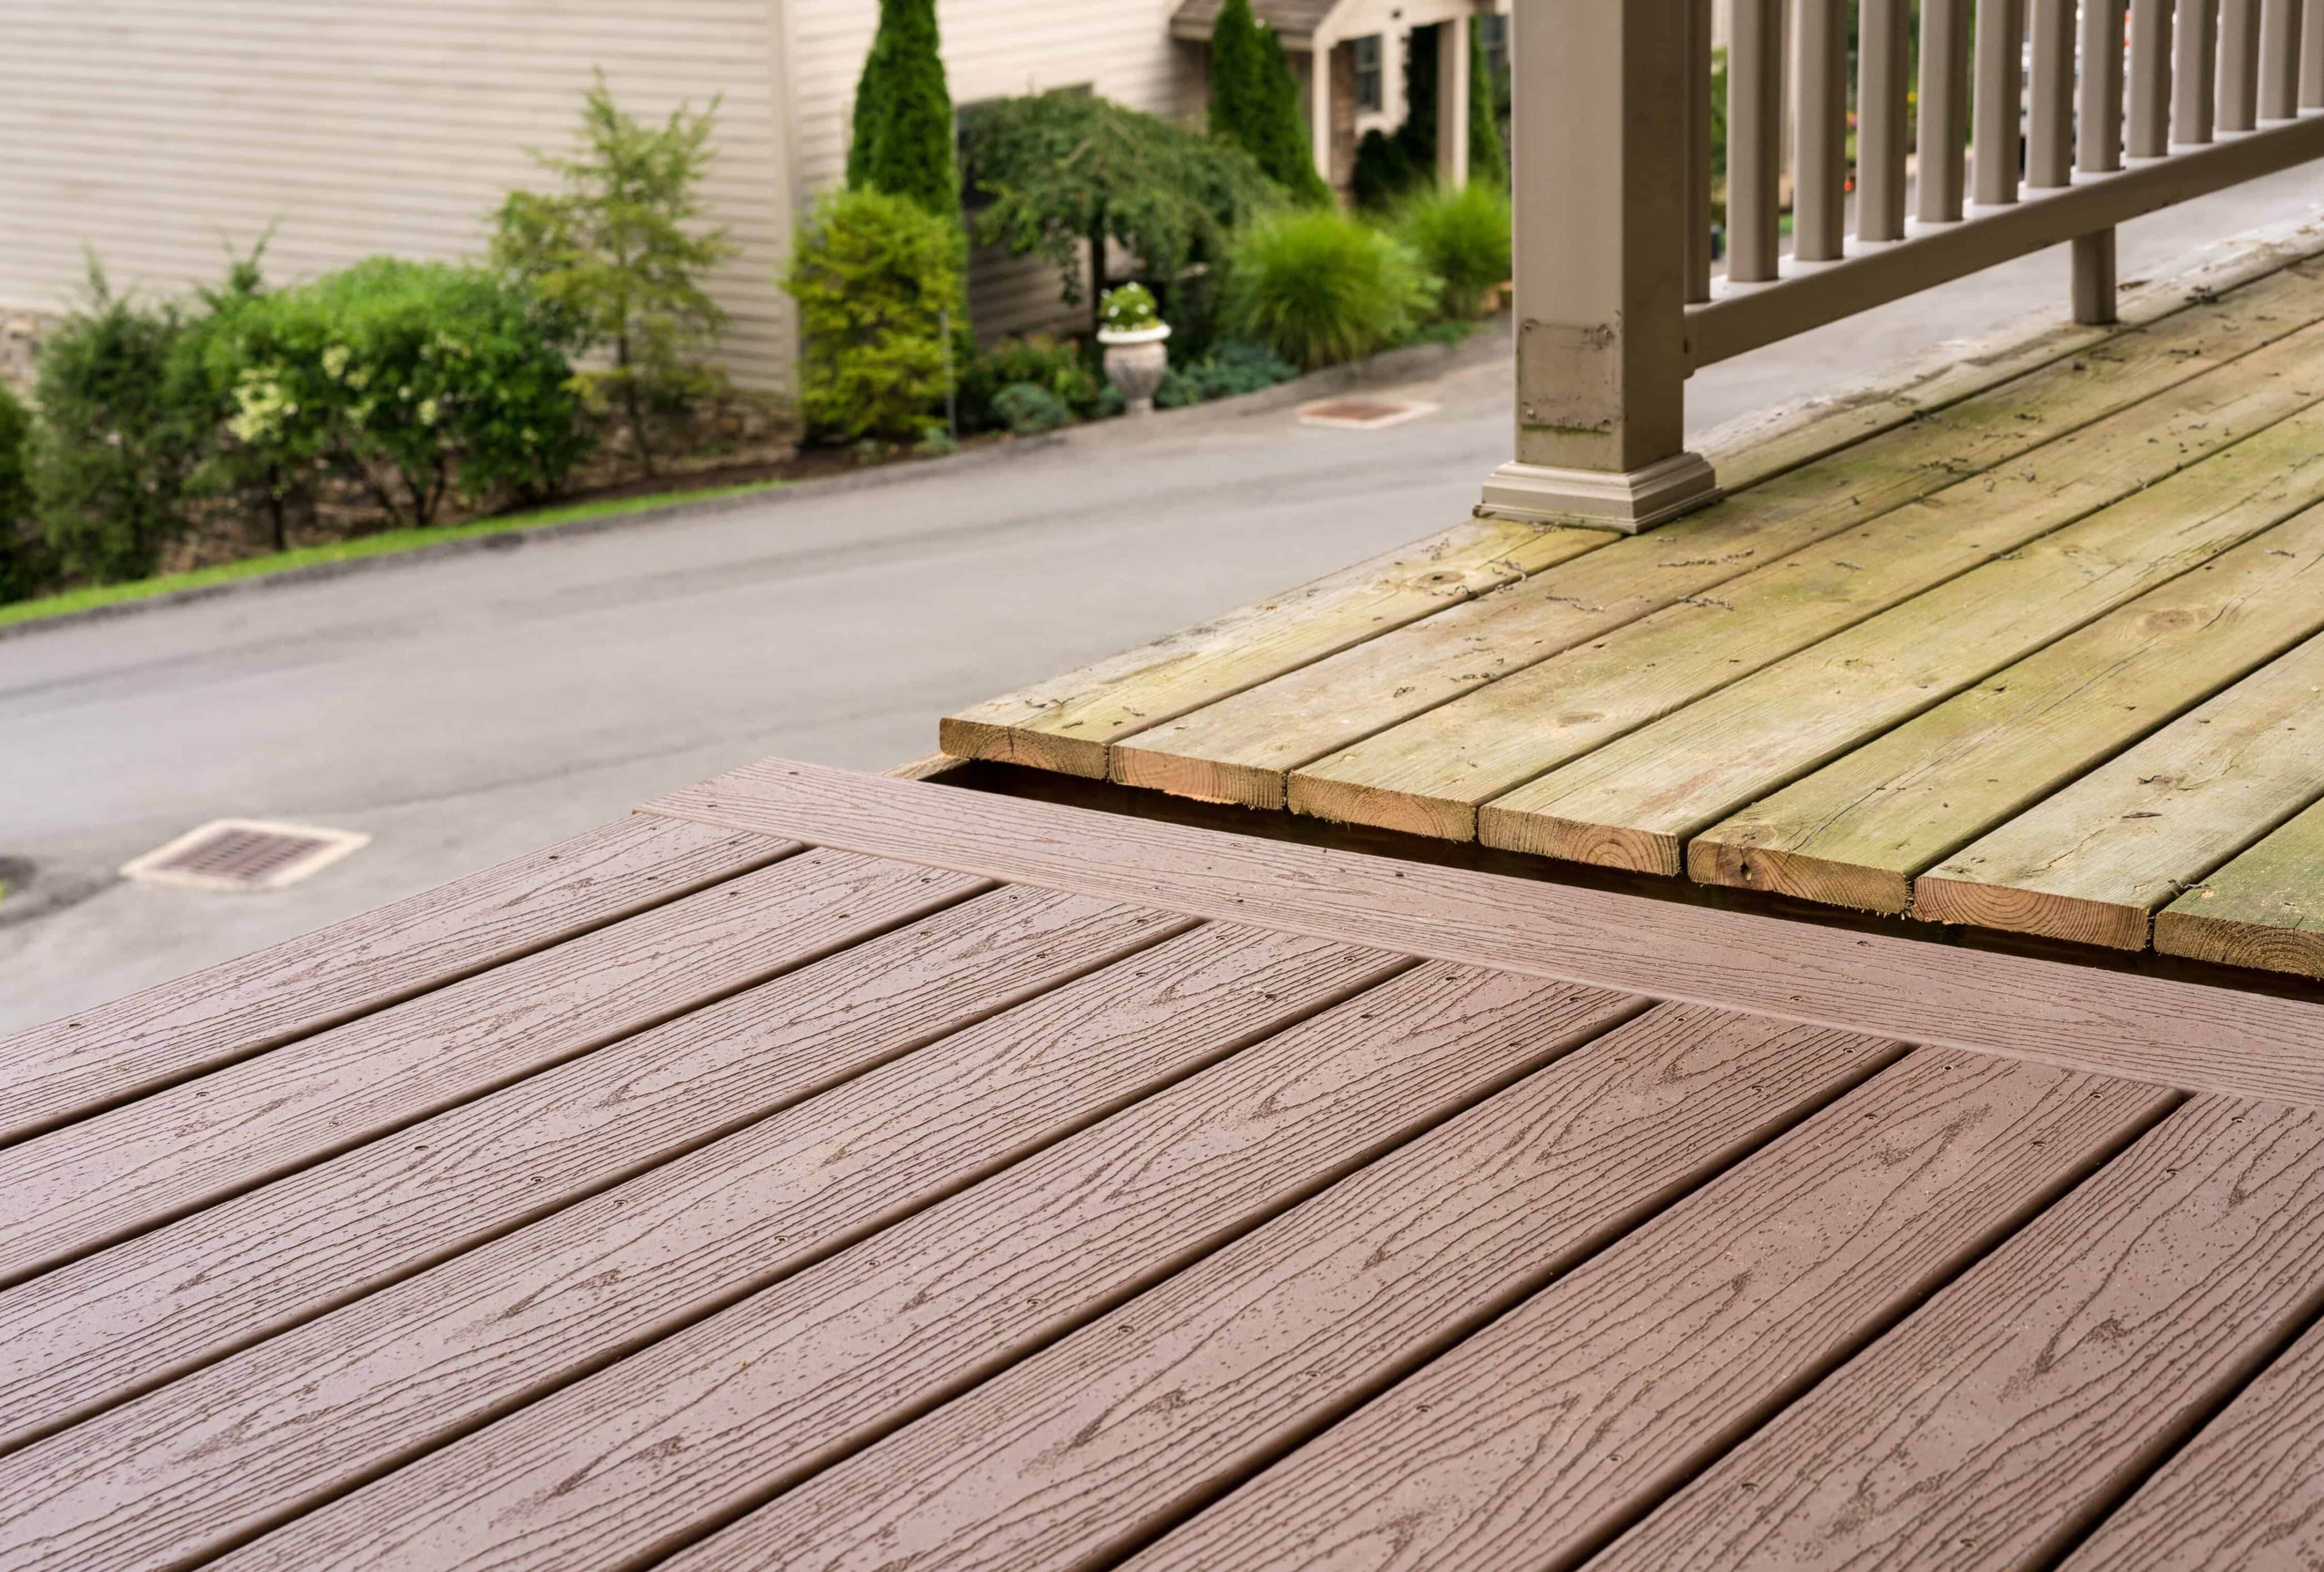 10 Tips for Choosing the Best Composite Decking - Decks & Docks Lumber Co.